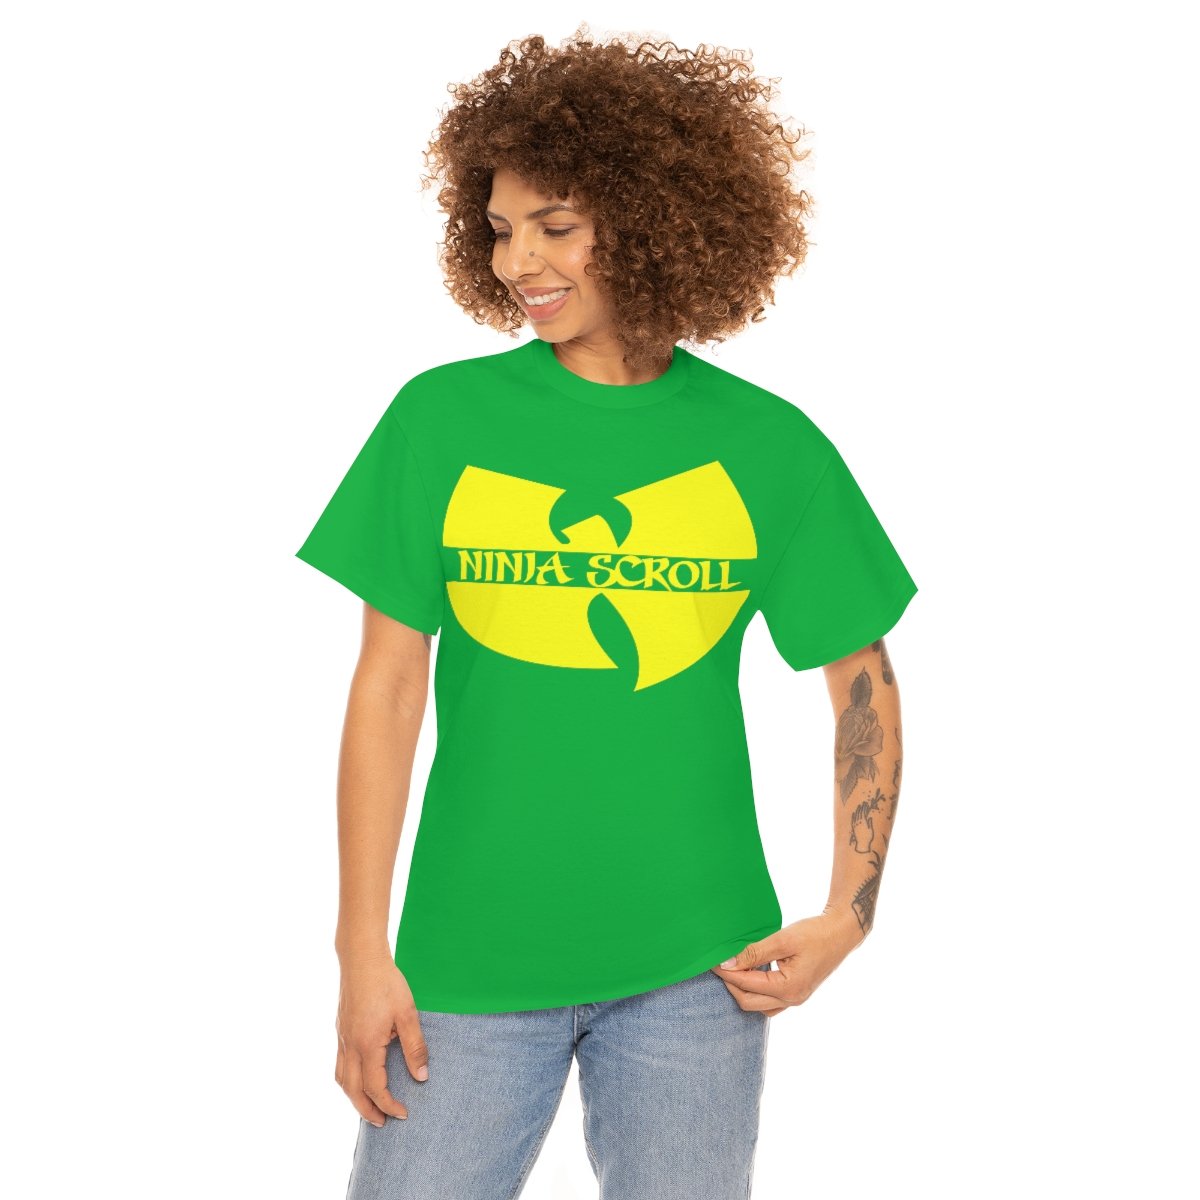 Ninja Scroll – Dove Green Short Sleeve Tshirt (5000)